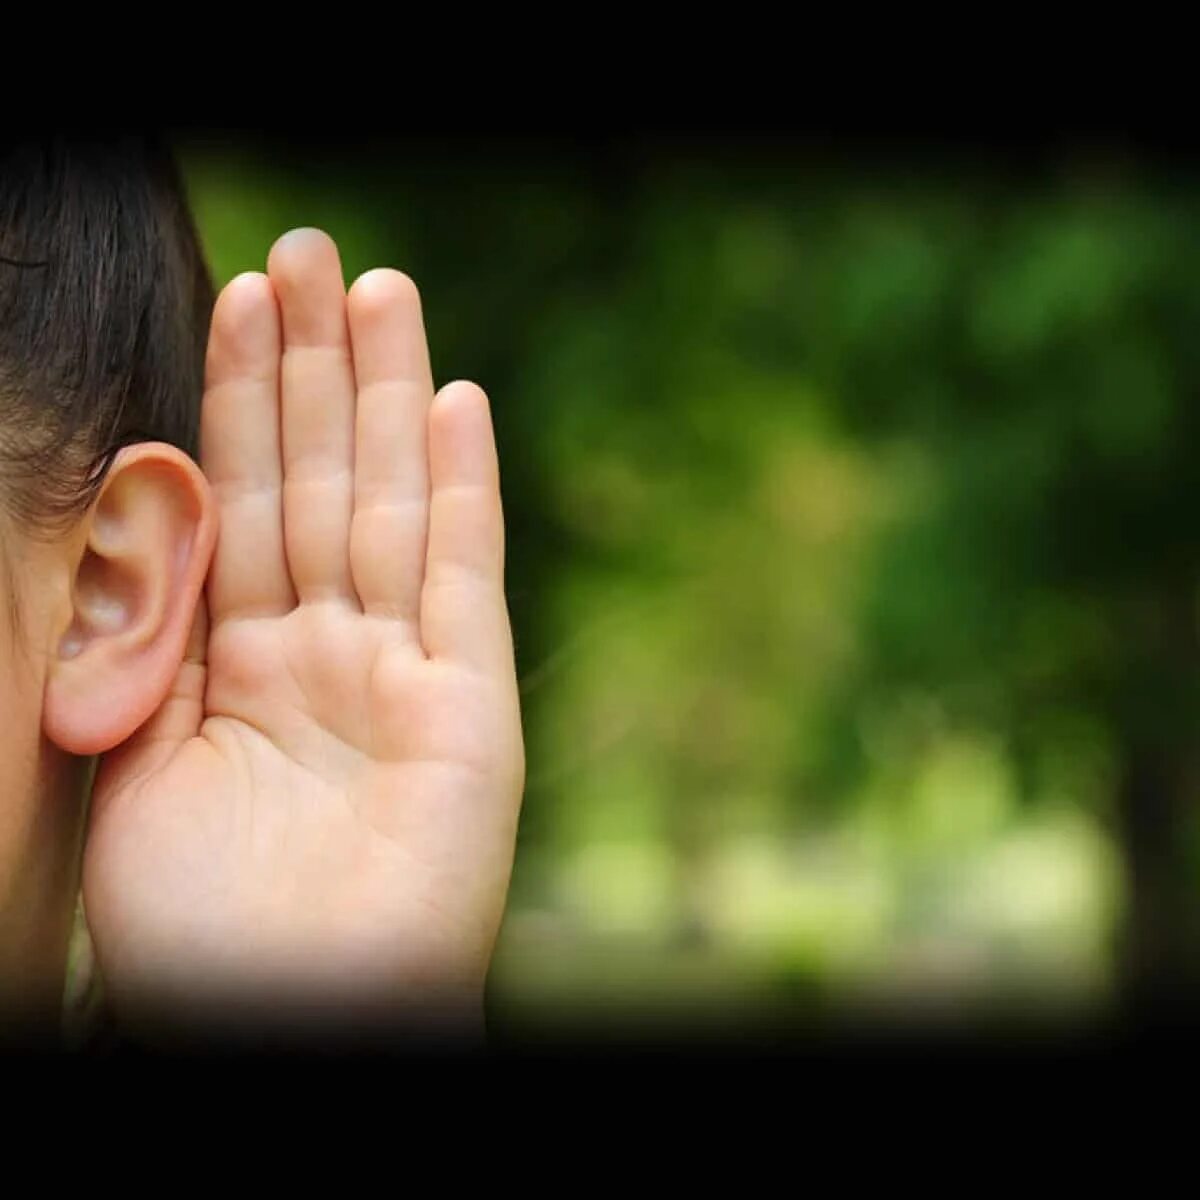 Слышать мало. Нарушение слуха. Глухие дети. Глухие и слабослышащие. Люди с нарушением слуха.